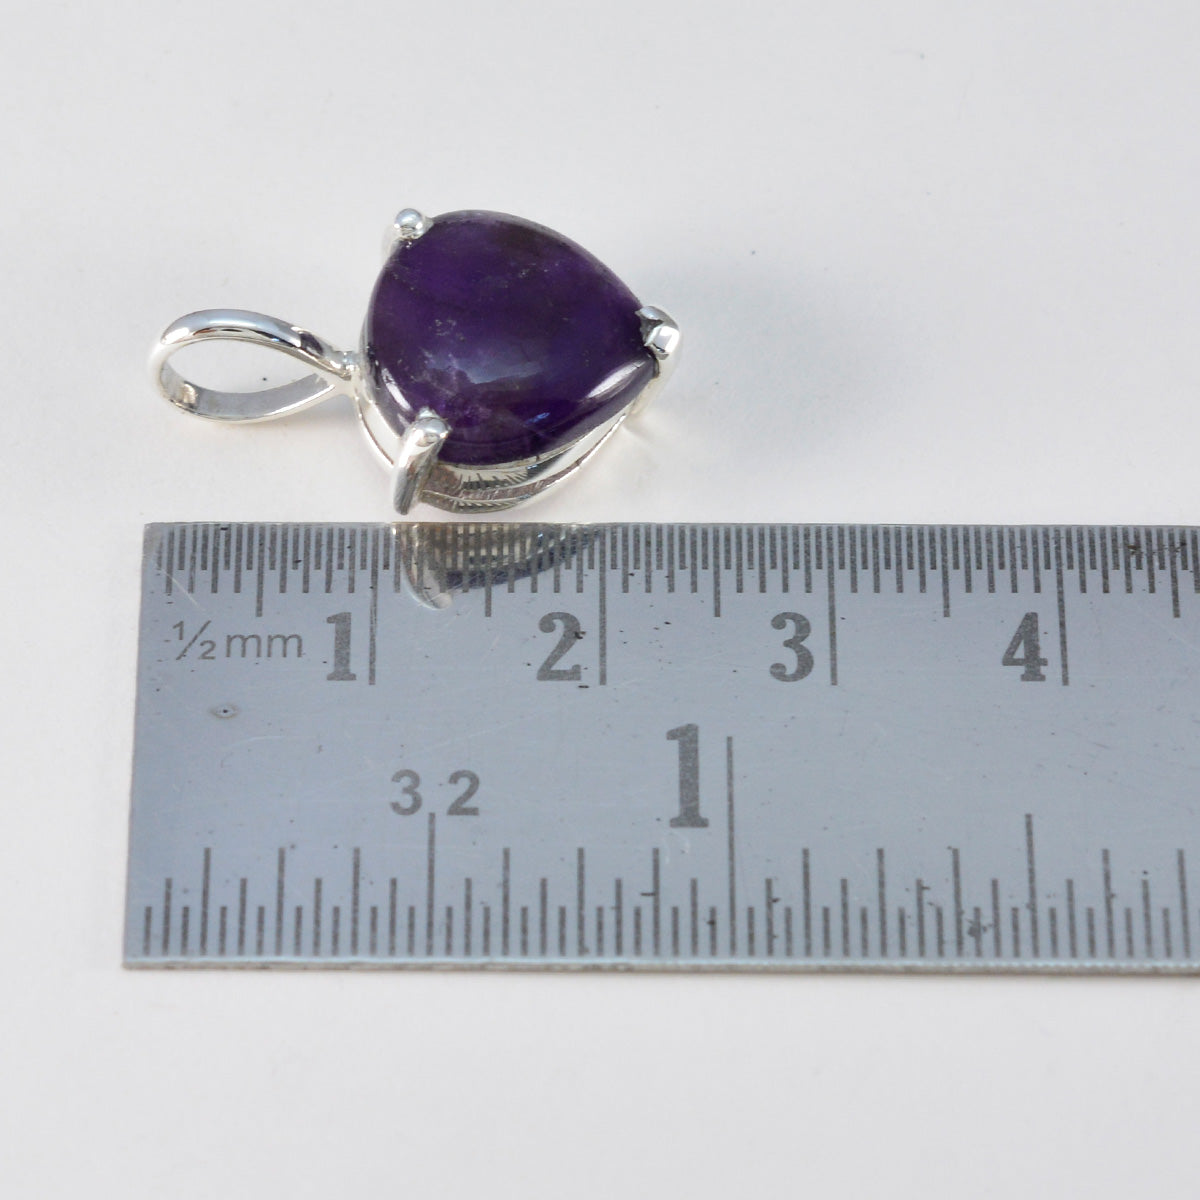 Riyo – pendentif en argent sterling avec cabochon en forme de cœur, améthyste violette, cadeau pour ami